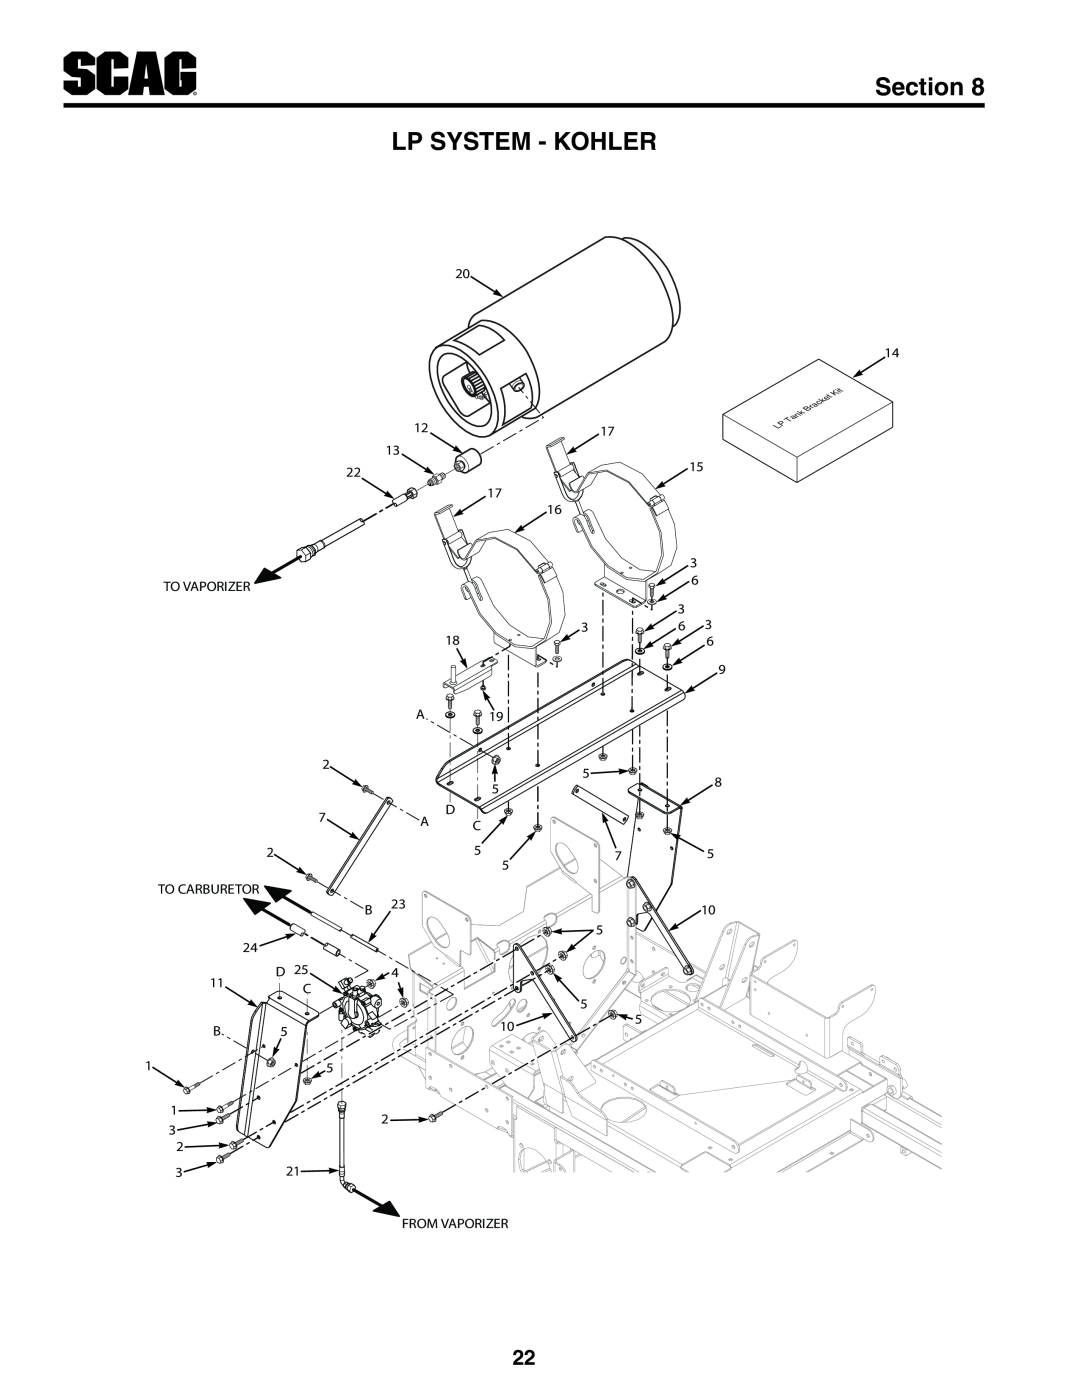 Scag Power Equipment STT-25CH-LP manual Lp System - Kohler, Section 